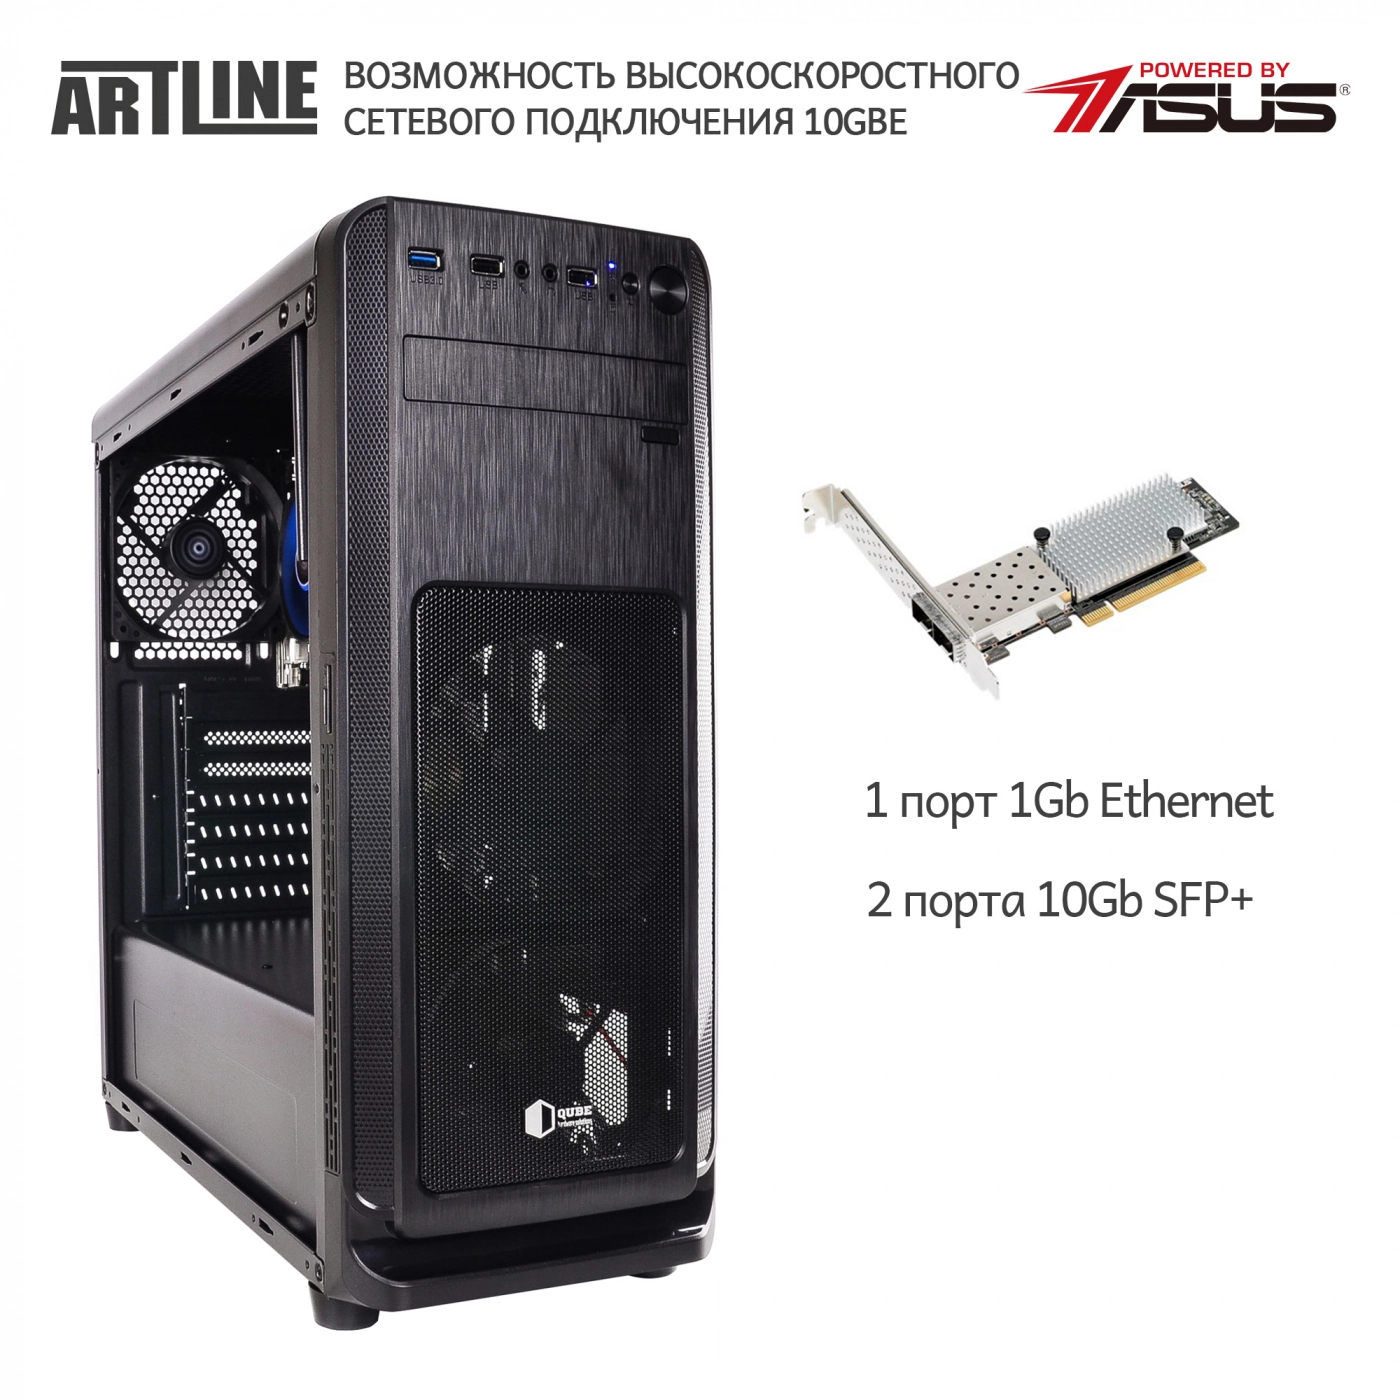 Купить Сервер ARTLINE Business T61v03 - фото 2